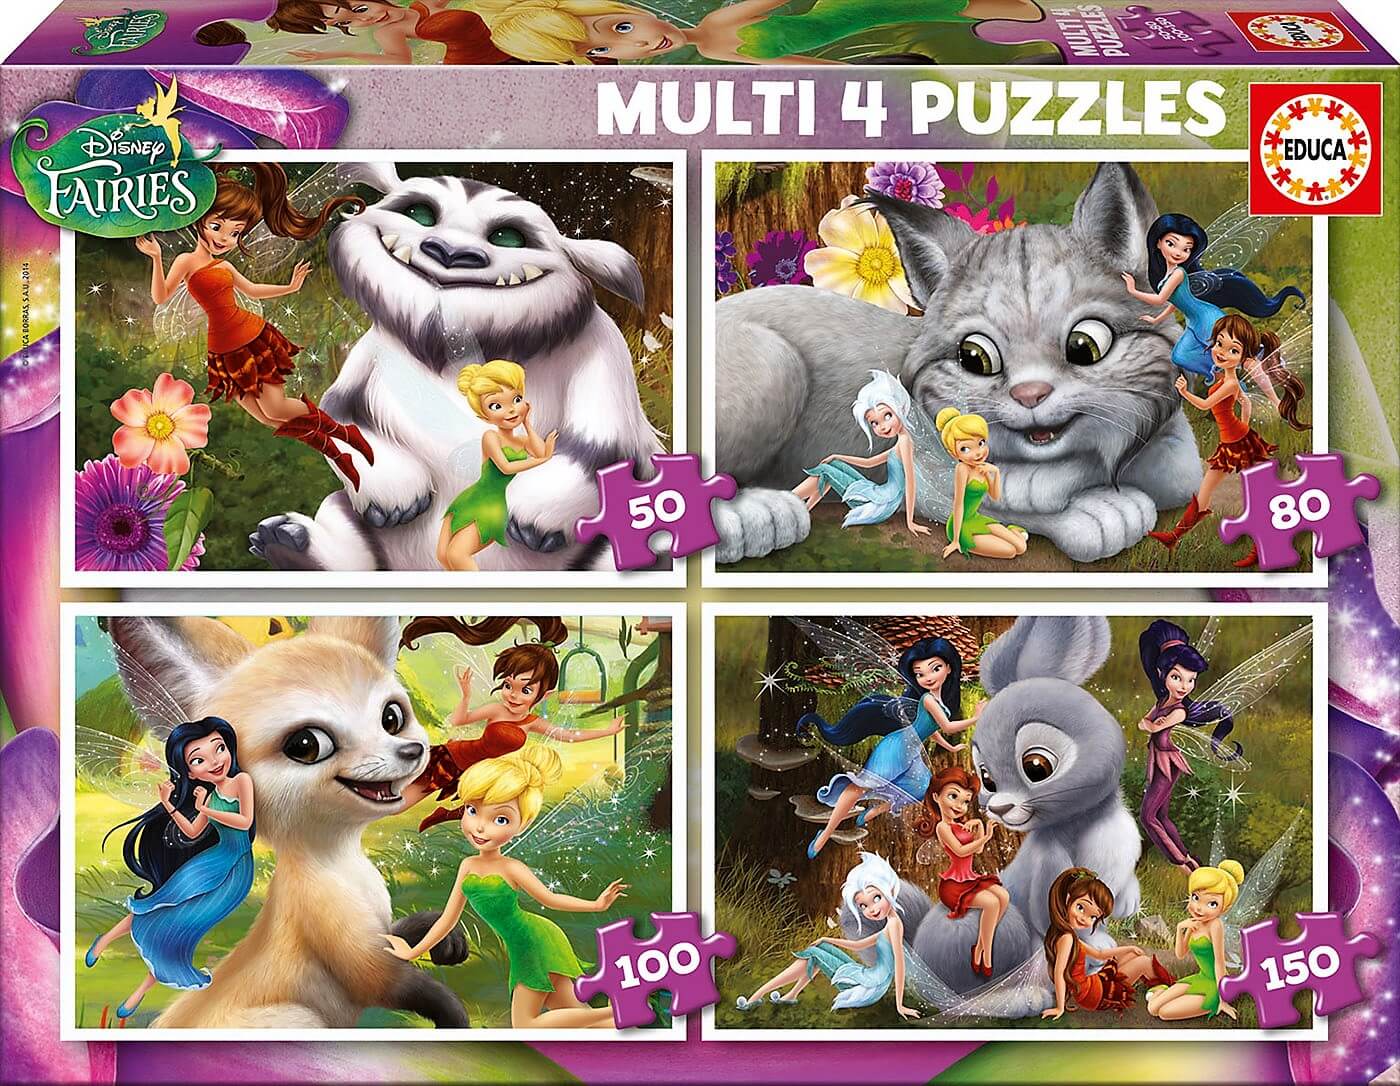 Multi 4 puzzles Hadas Disney